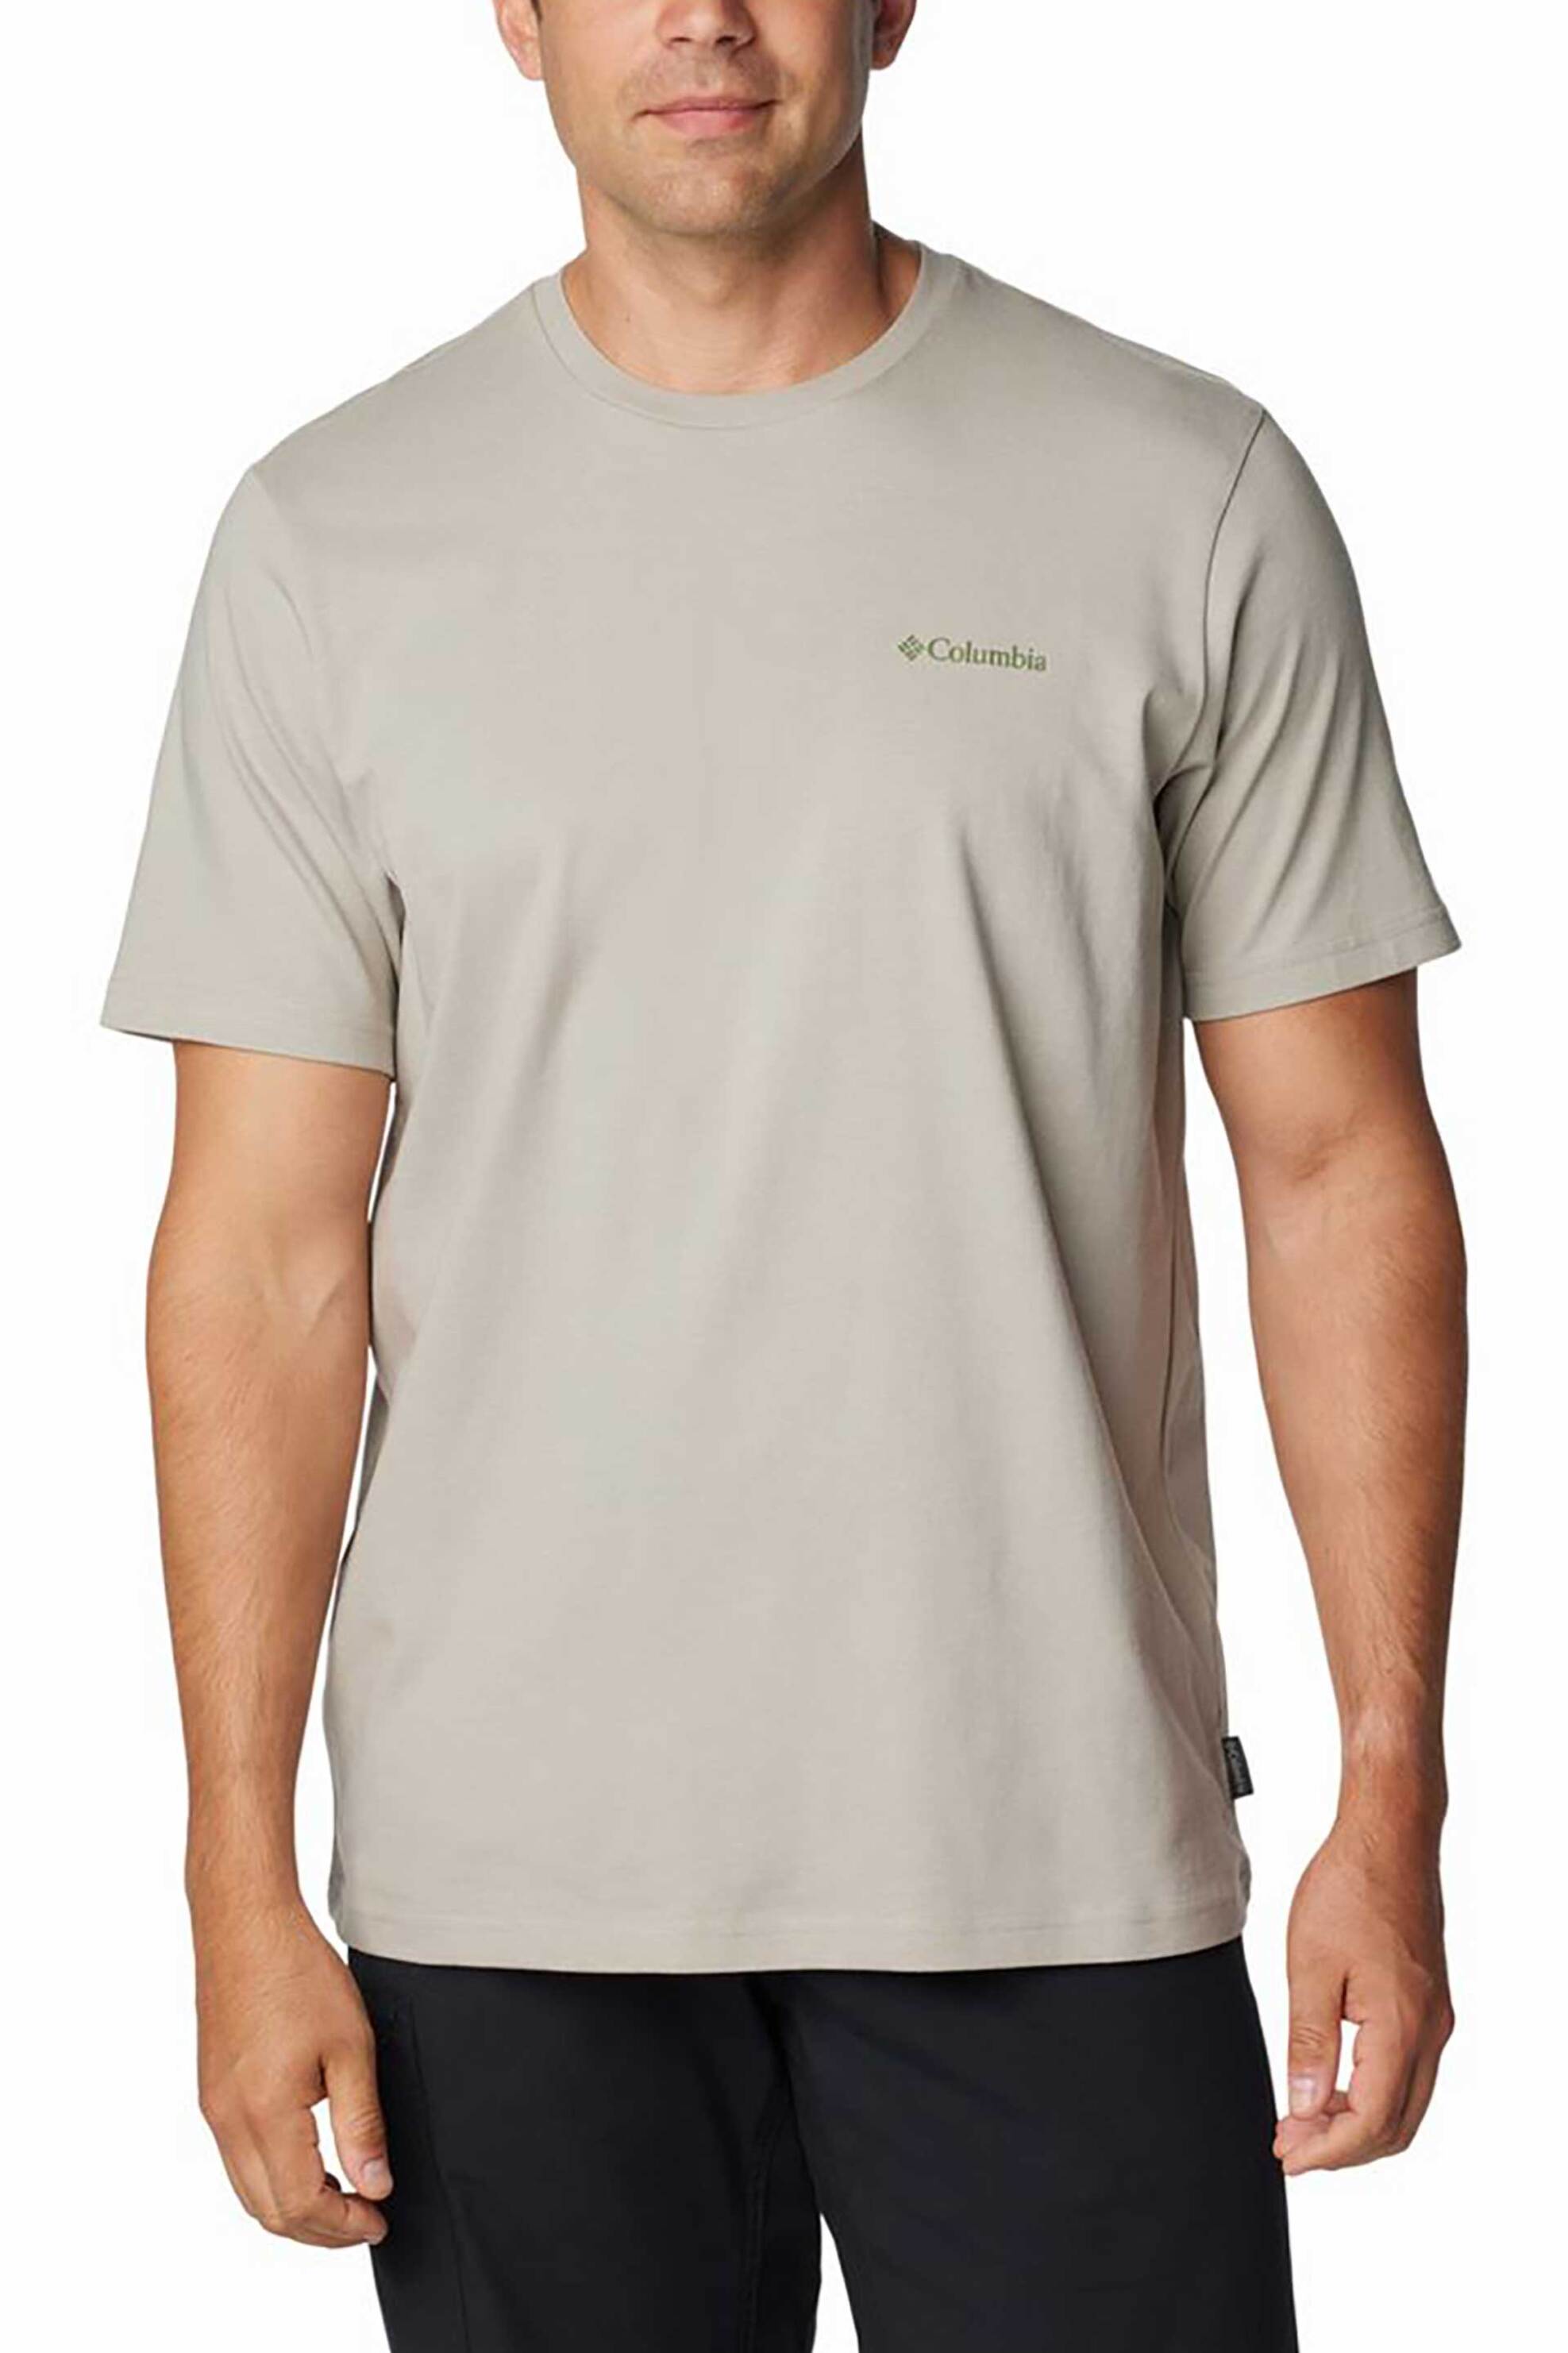 Ανδρική Μόδα > Ανδρικά Ρούχα > Ανδρικές Μπλούζες > Ανδρικά T-Shirts Columbia ανδρικό T-shirt μονόχρωμο με print στην πλάτη "Explorers Canyon™ Back" - 2036451027L Μπεζ